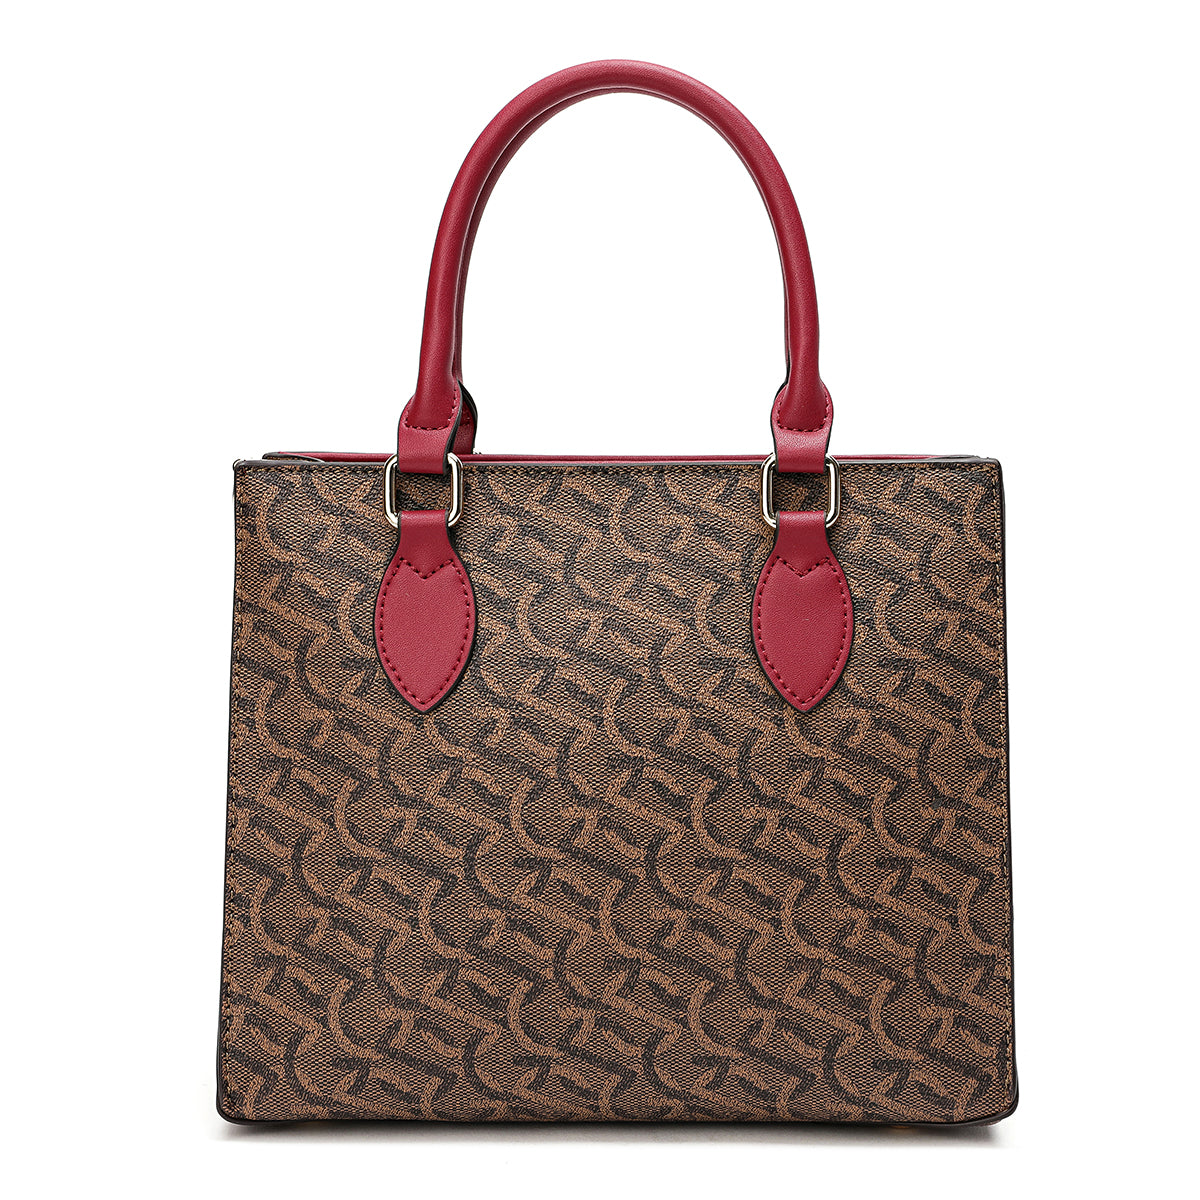 A spacious handbag with a simple and elegant design